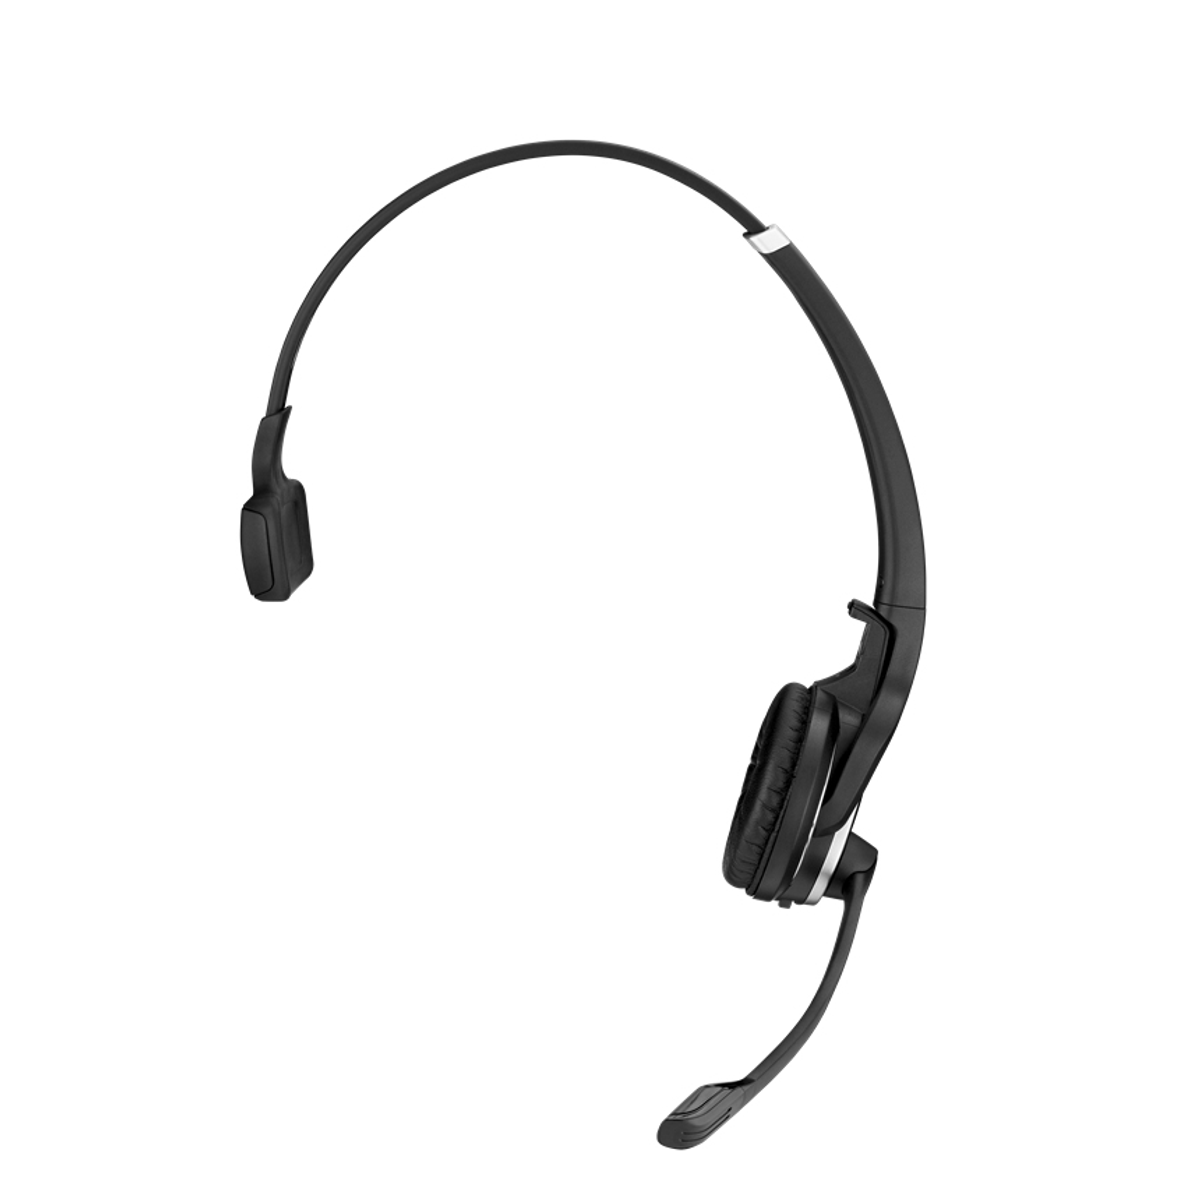 Kopfhörer Bluetooth On-ear Schwarz 1000533, SENNHEISER